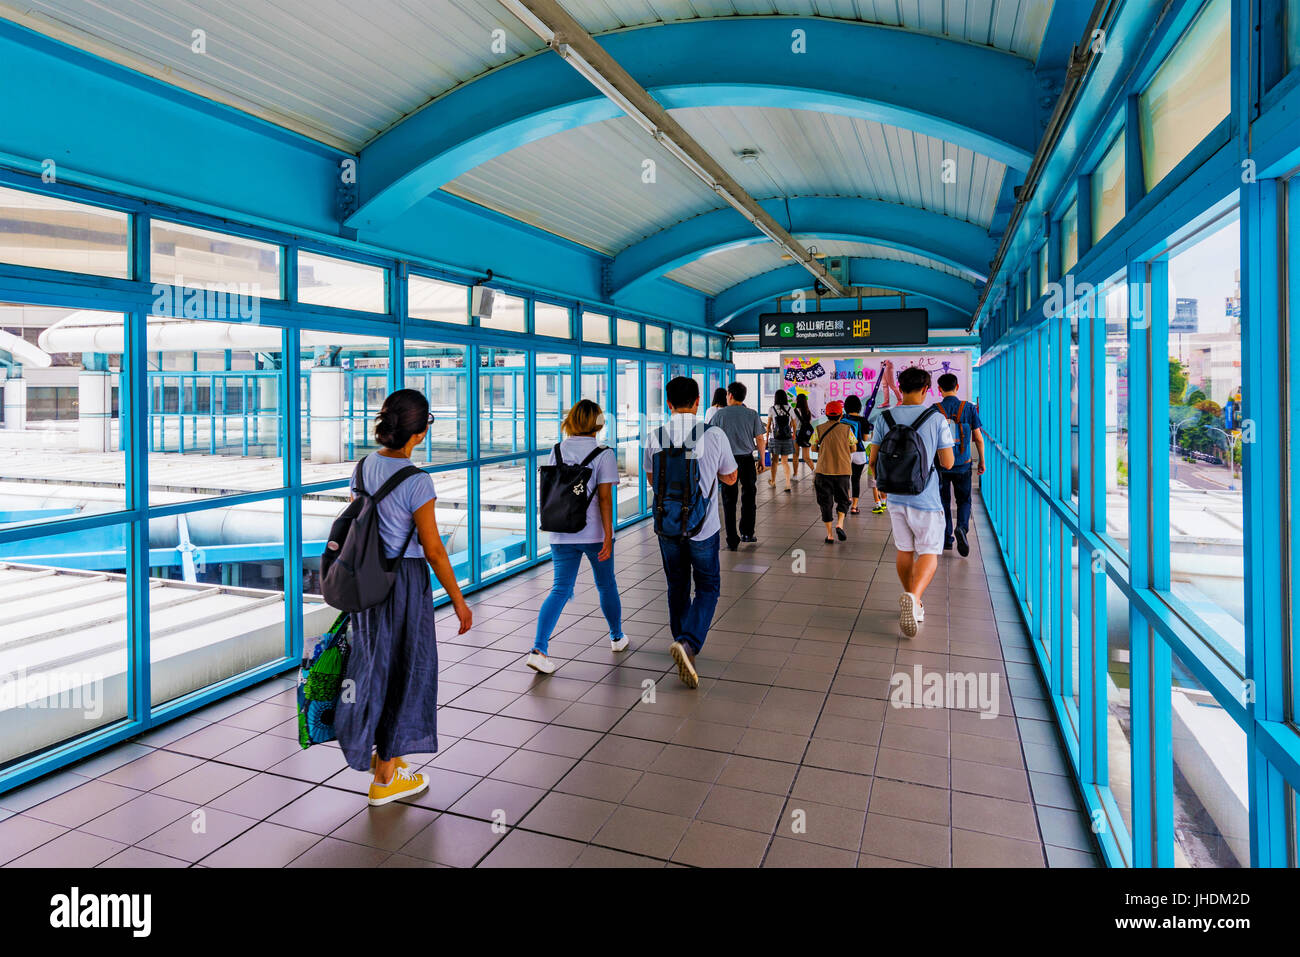 TAIPEI, TAÏWAN - JUIN 09 : c'est un viaduc pont qui l'usage des passagers à transférer à l'autre ligne de la station de MRT Zhongxiao Fuxing un poste occupé Banque D'Images